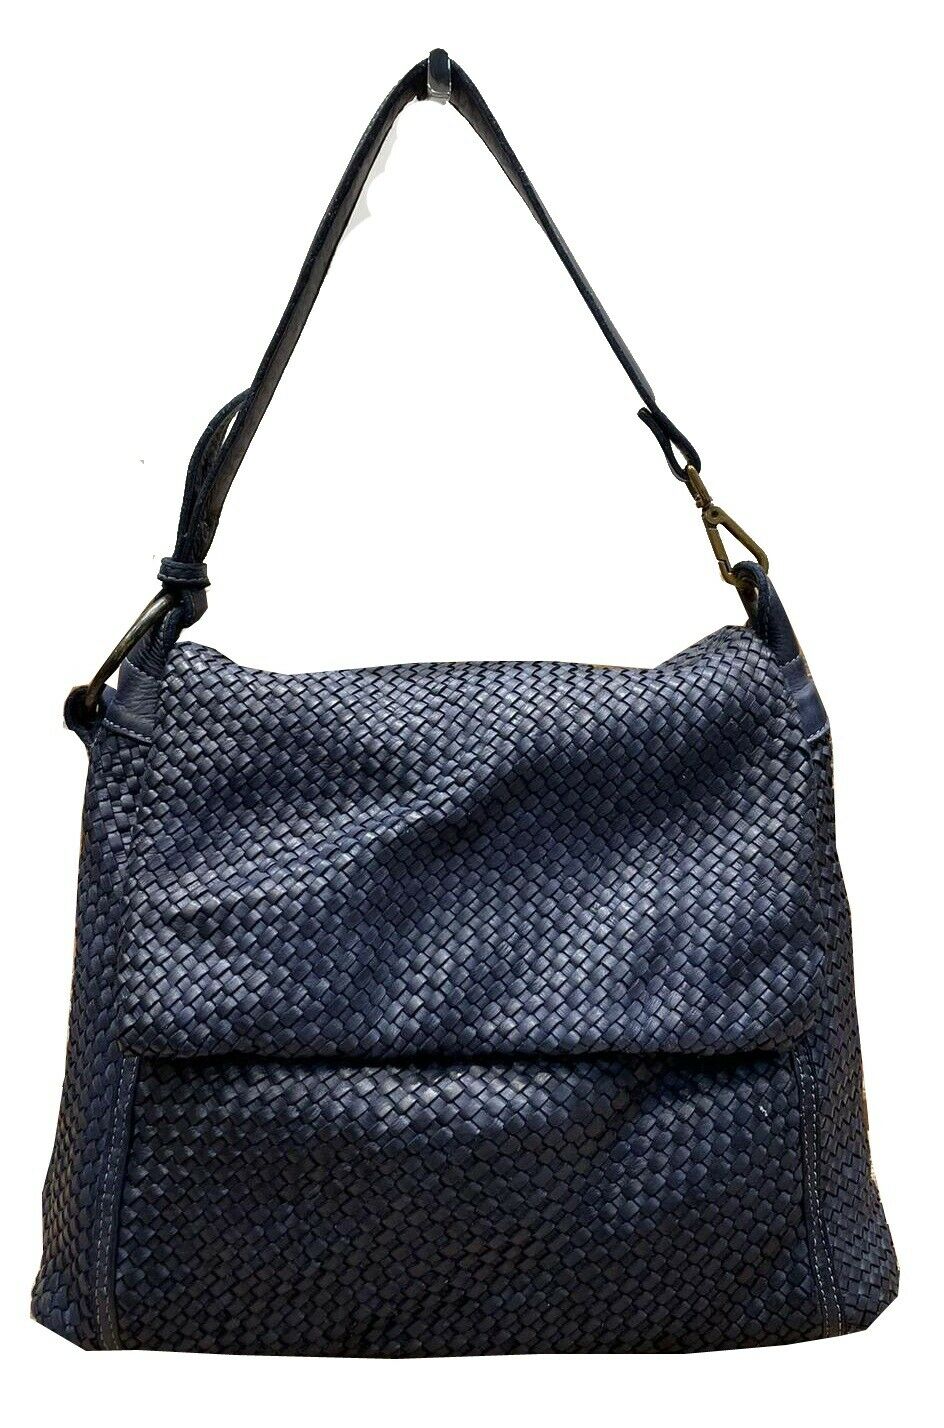 BZNA Bag Tarja Blau Italy Designer Messenger Damen Handtasche Schultertasche